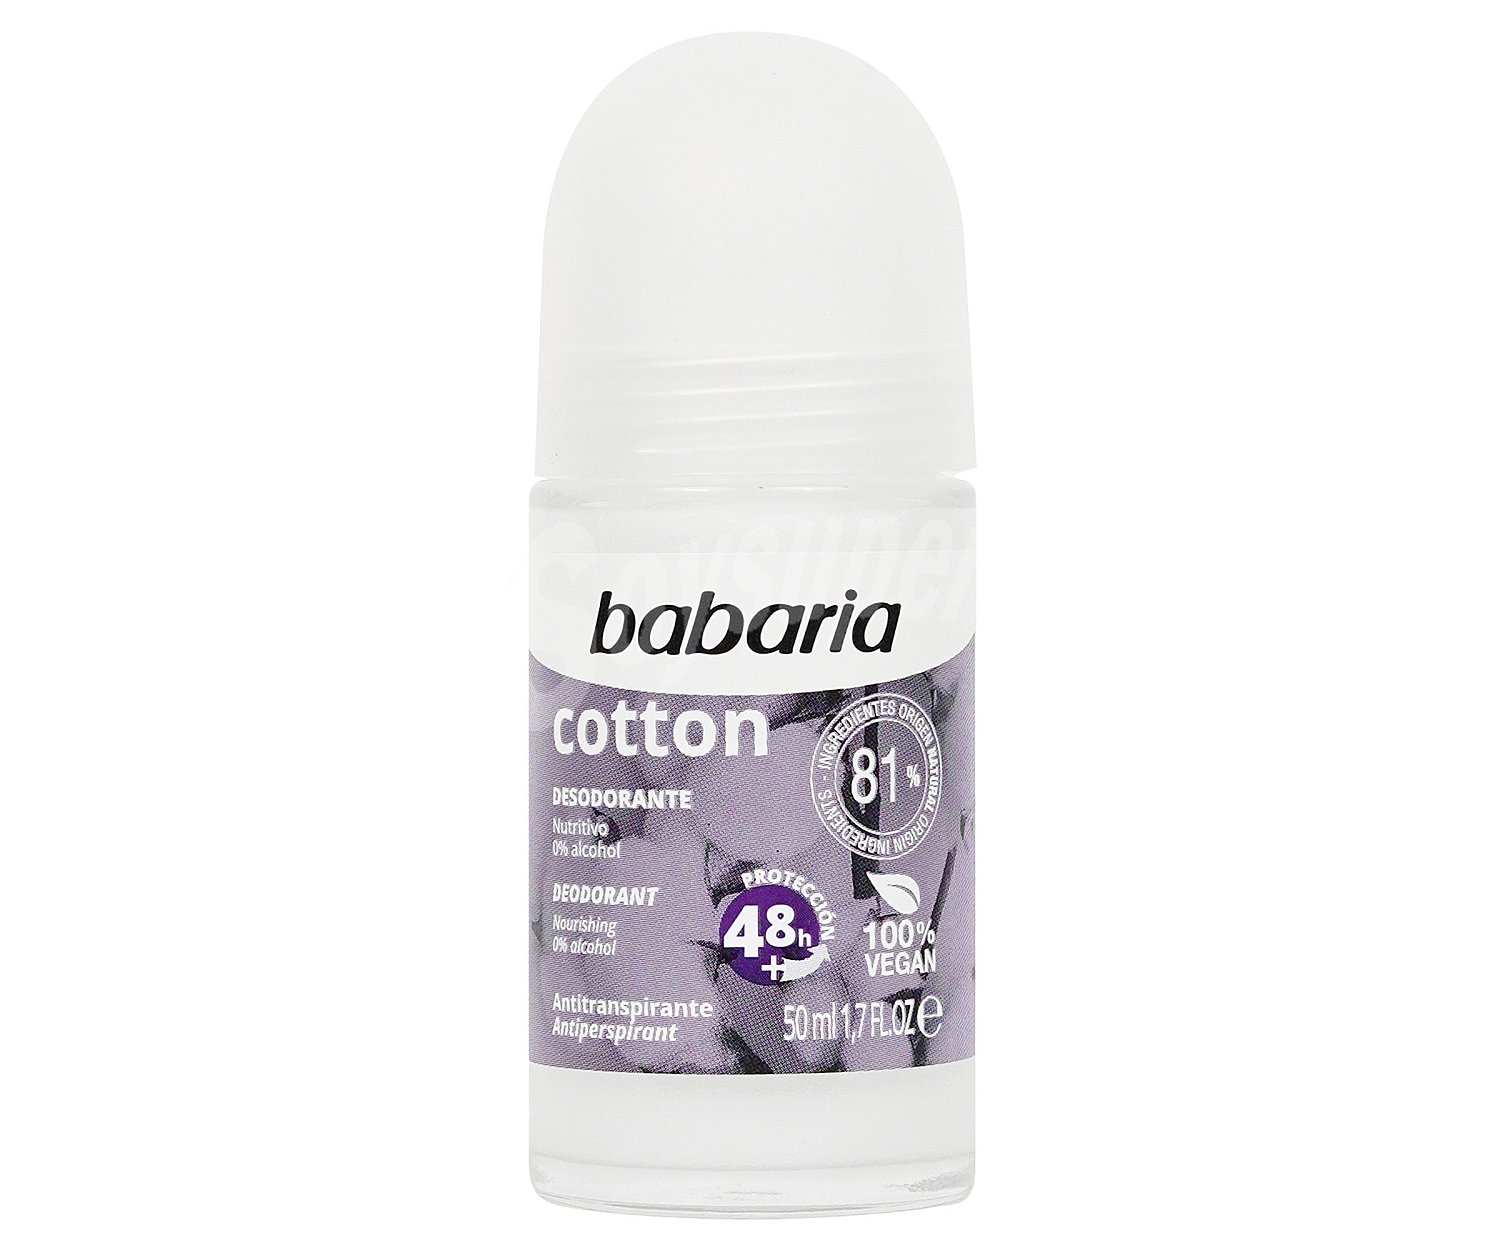 رول ضد تعریق Cotton باباریا ا Babaria Cotton Deodorant Roll On